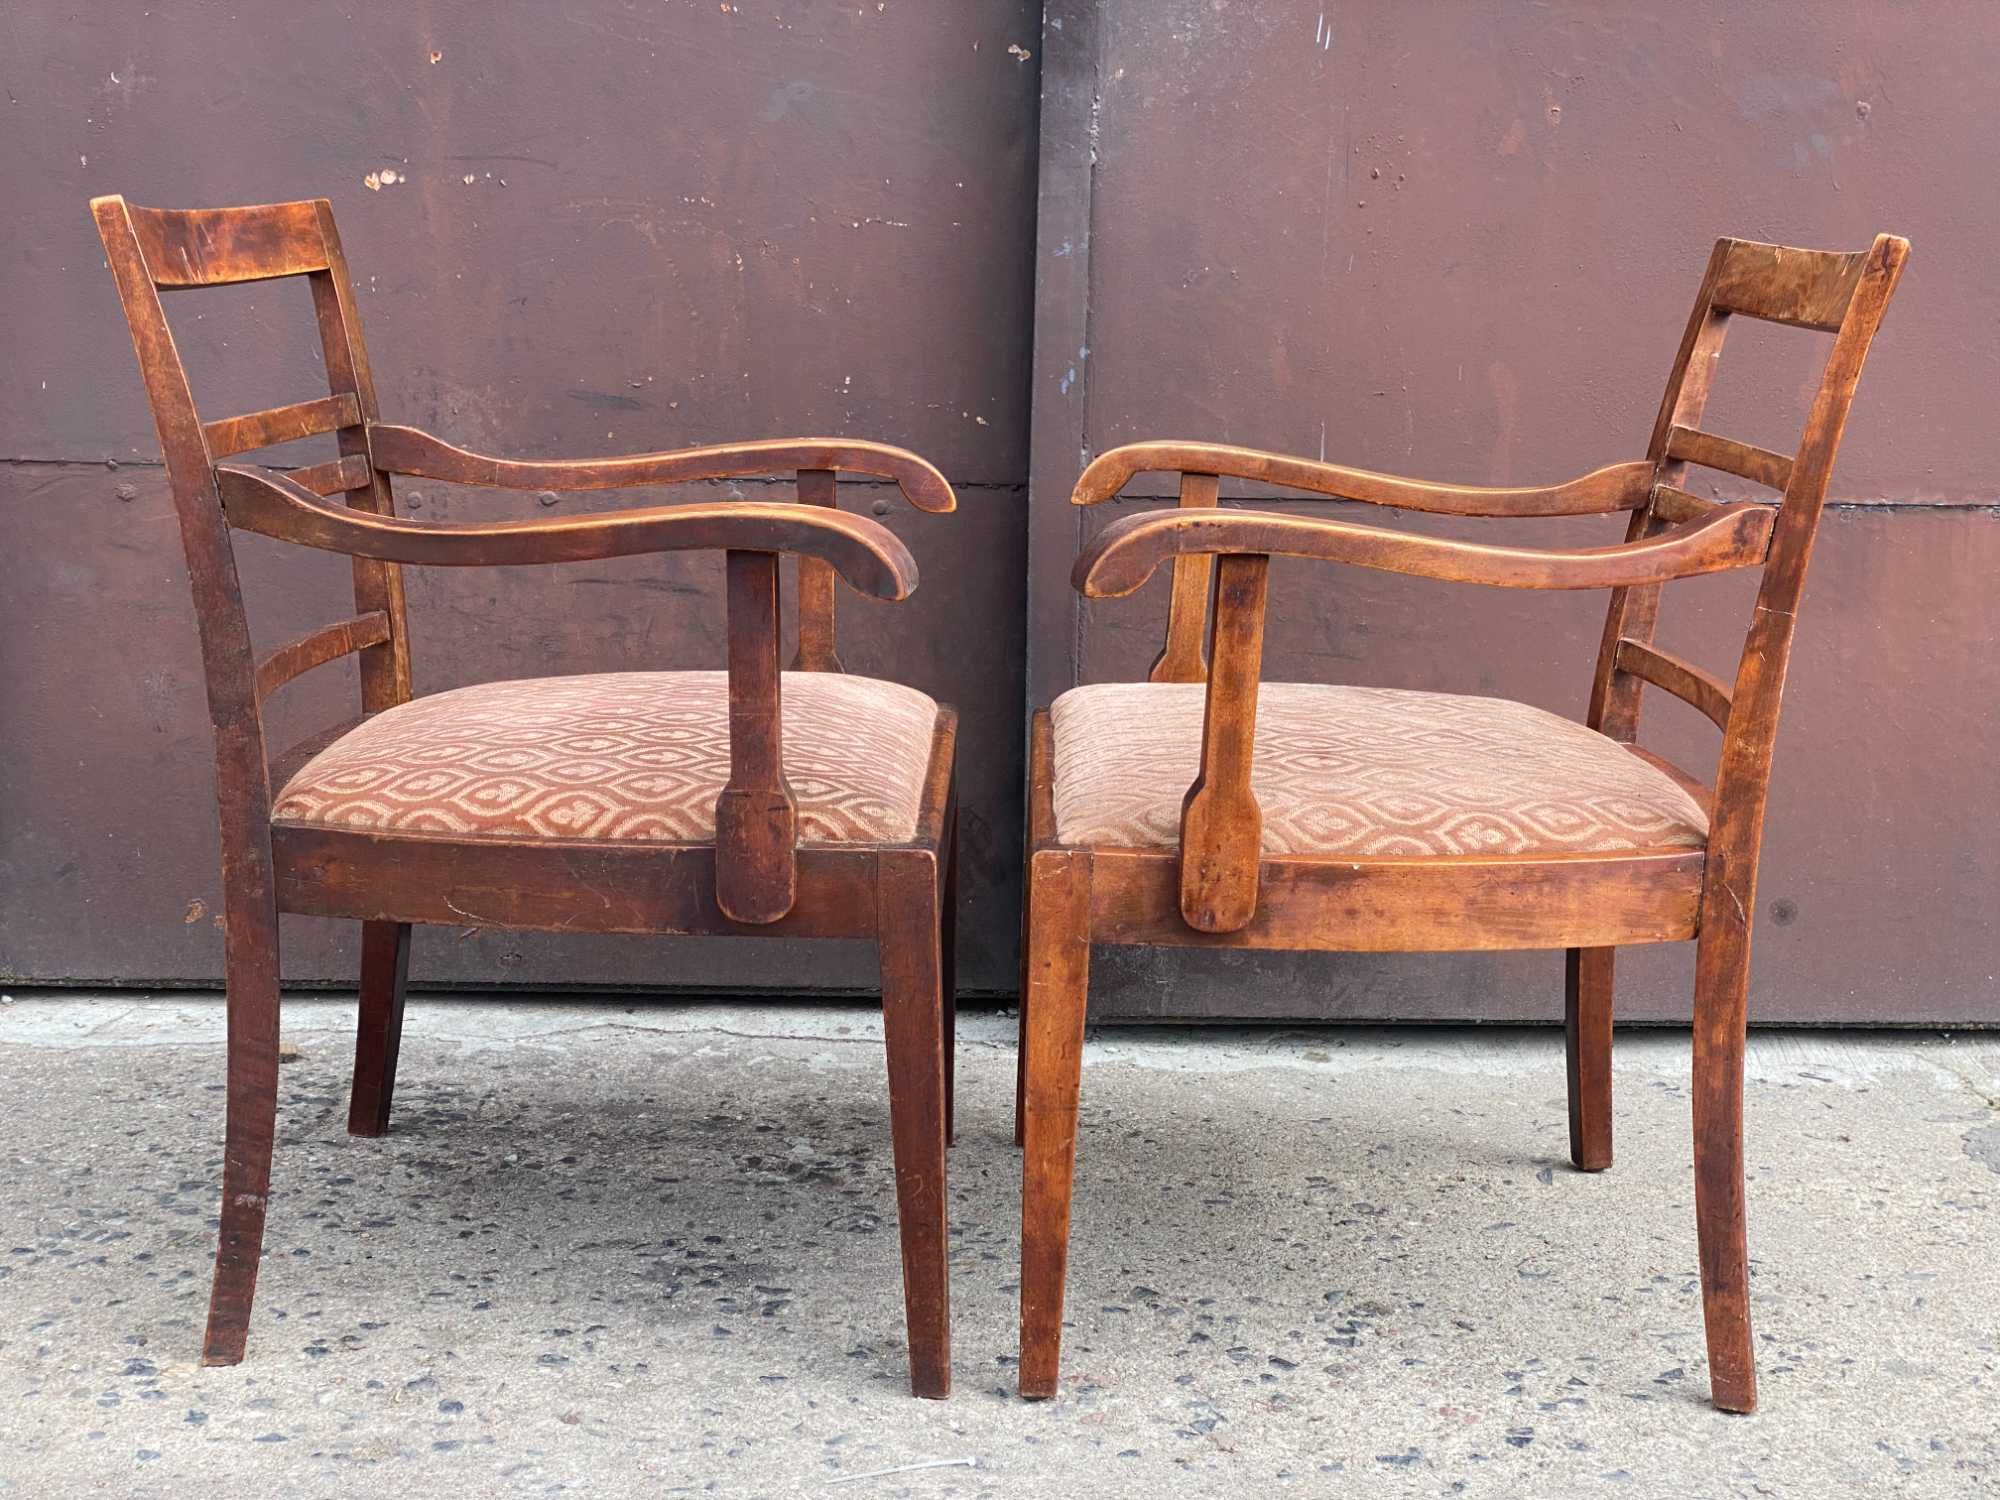 001 Para starych foteli stylowych, 2 drewniane fotele